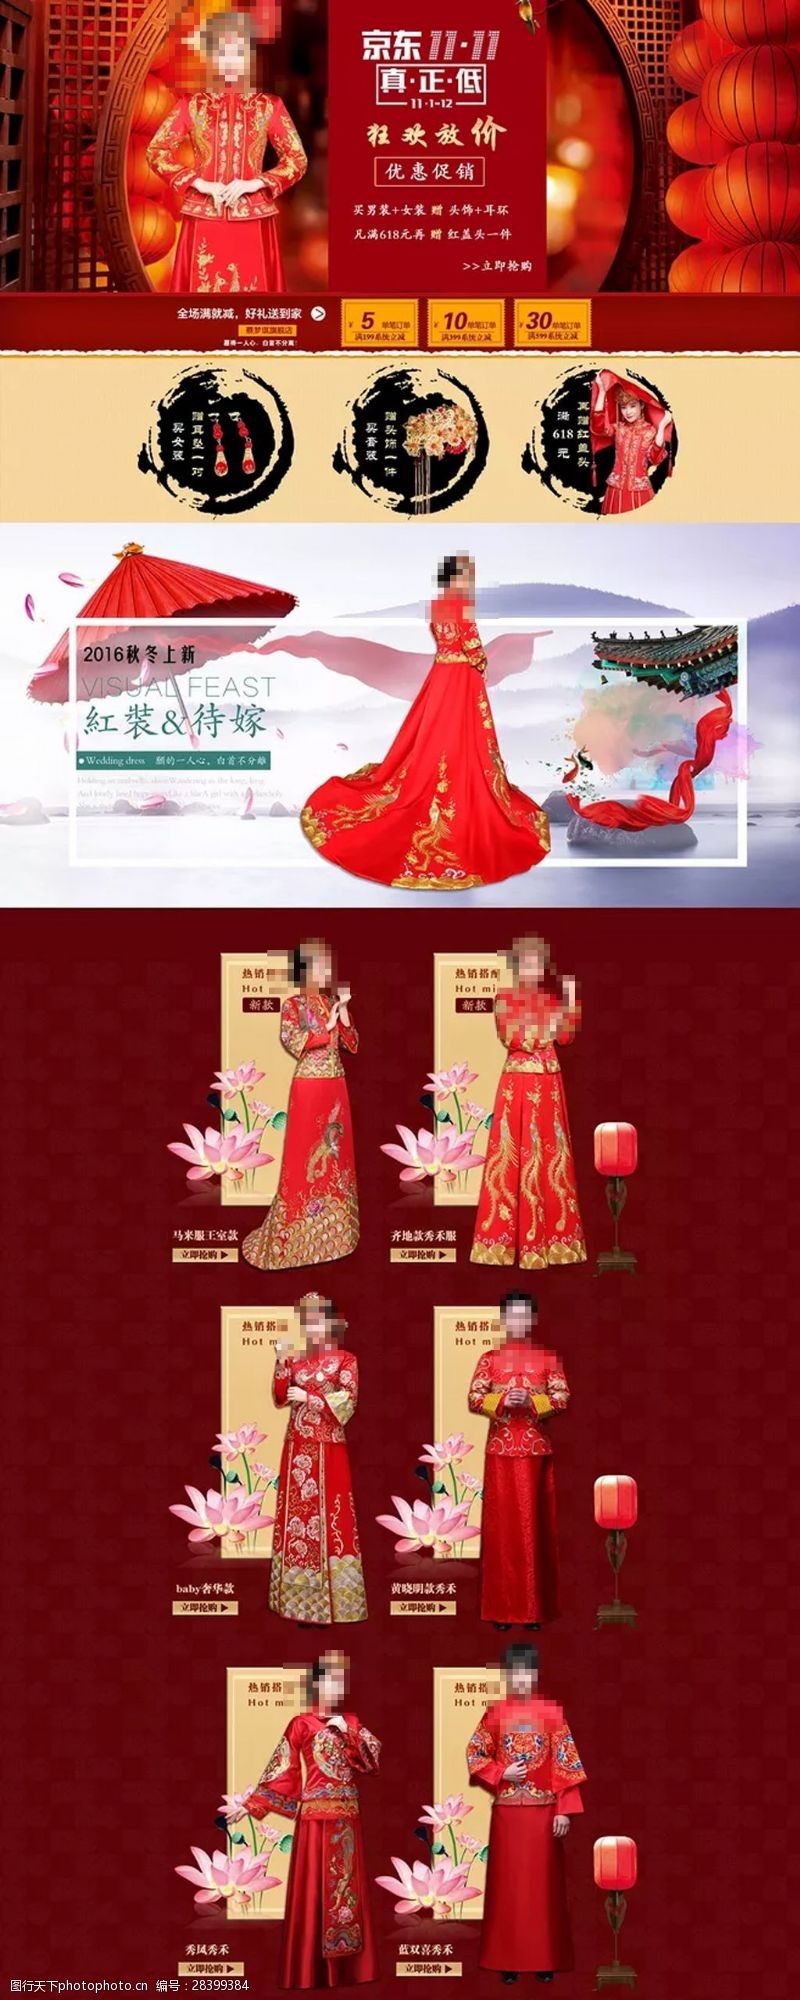 中国风详情页秀禾服淘宝天猫描述详情页设计模板